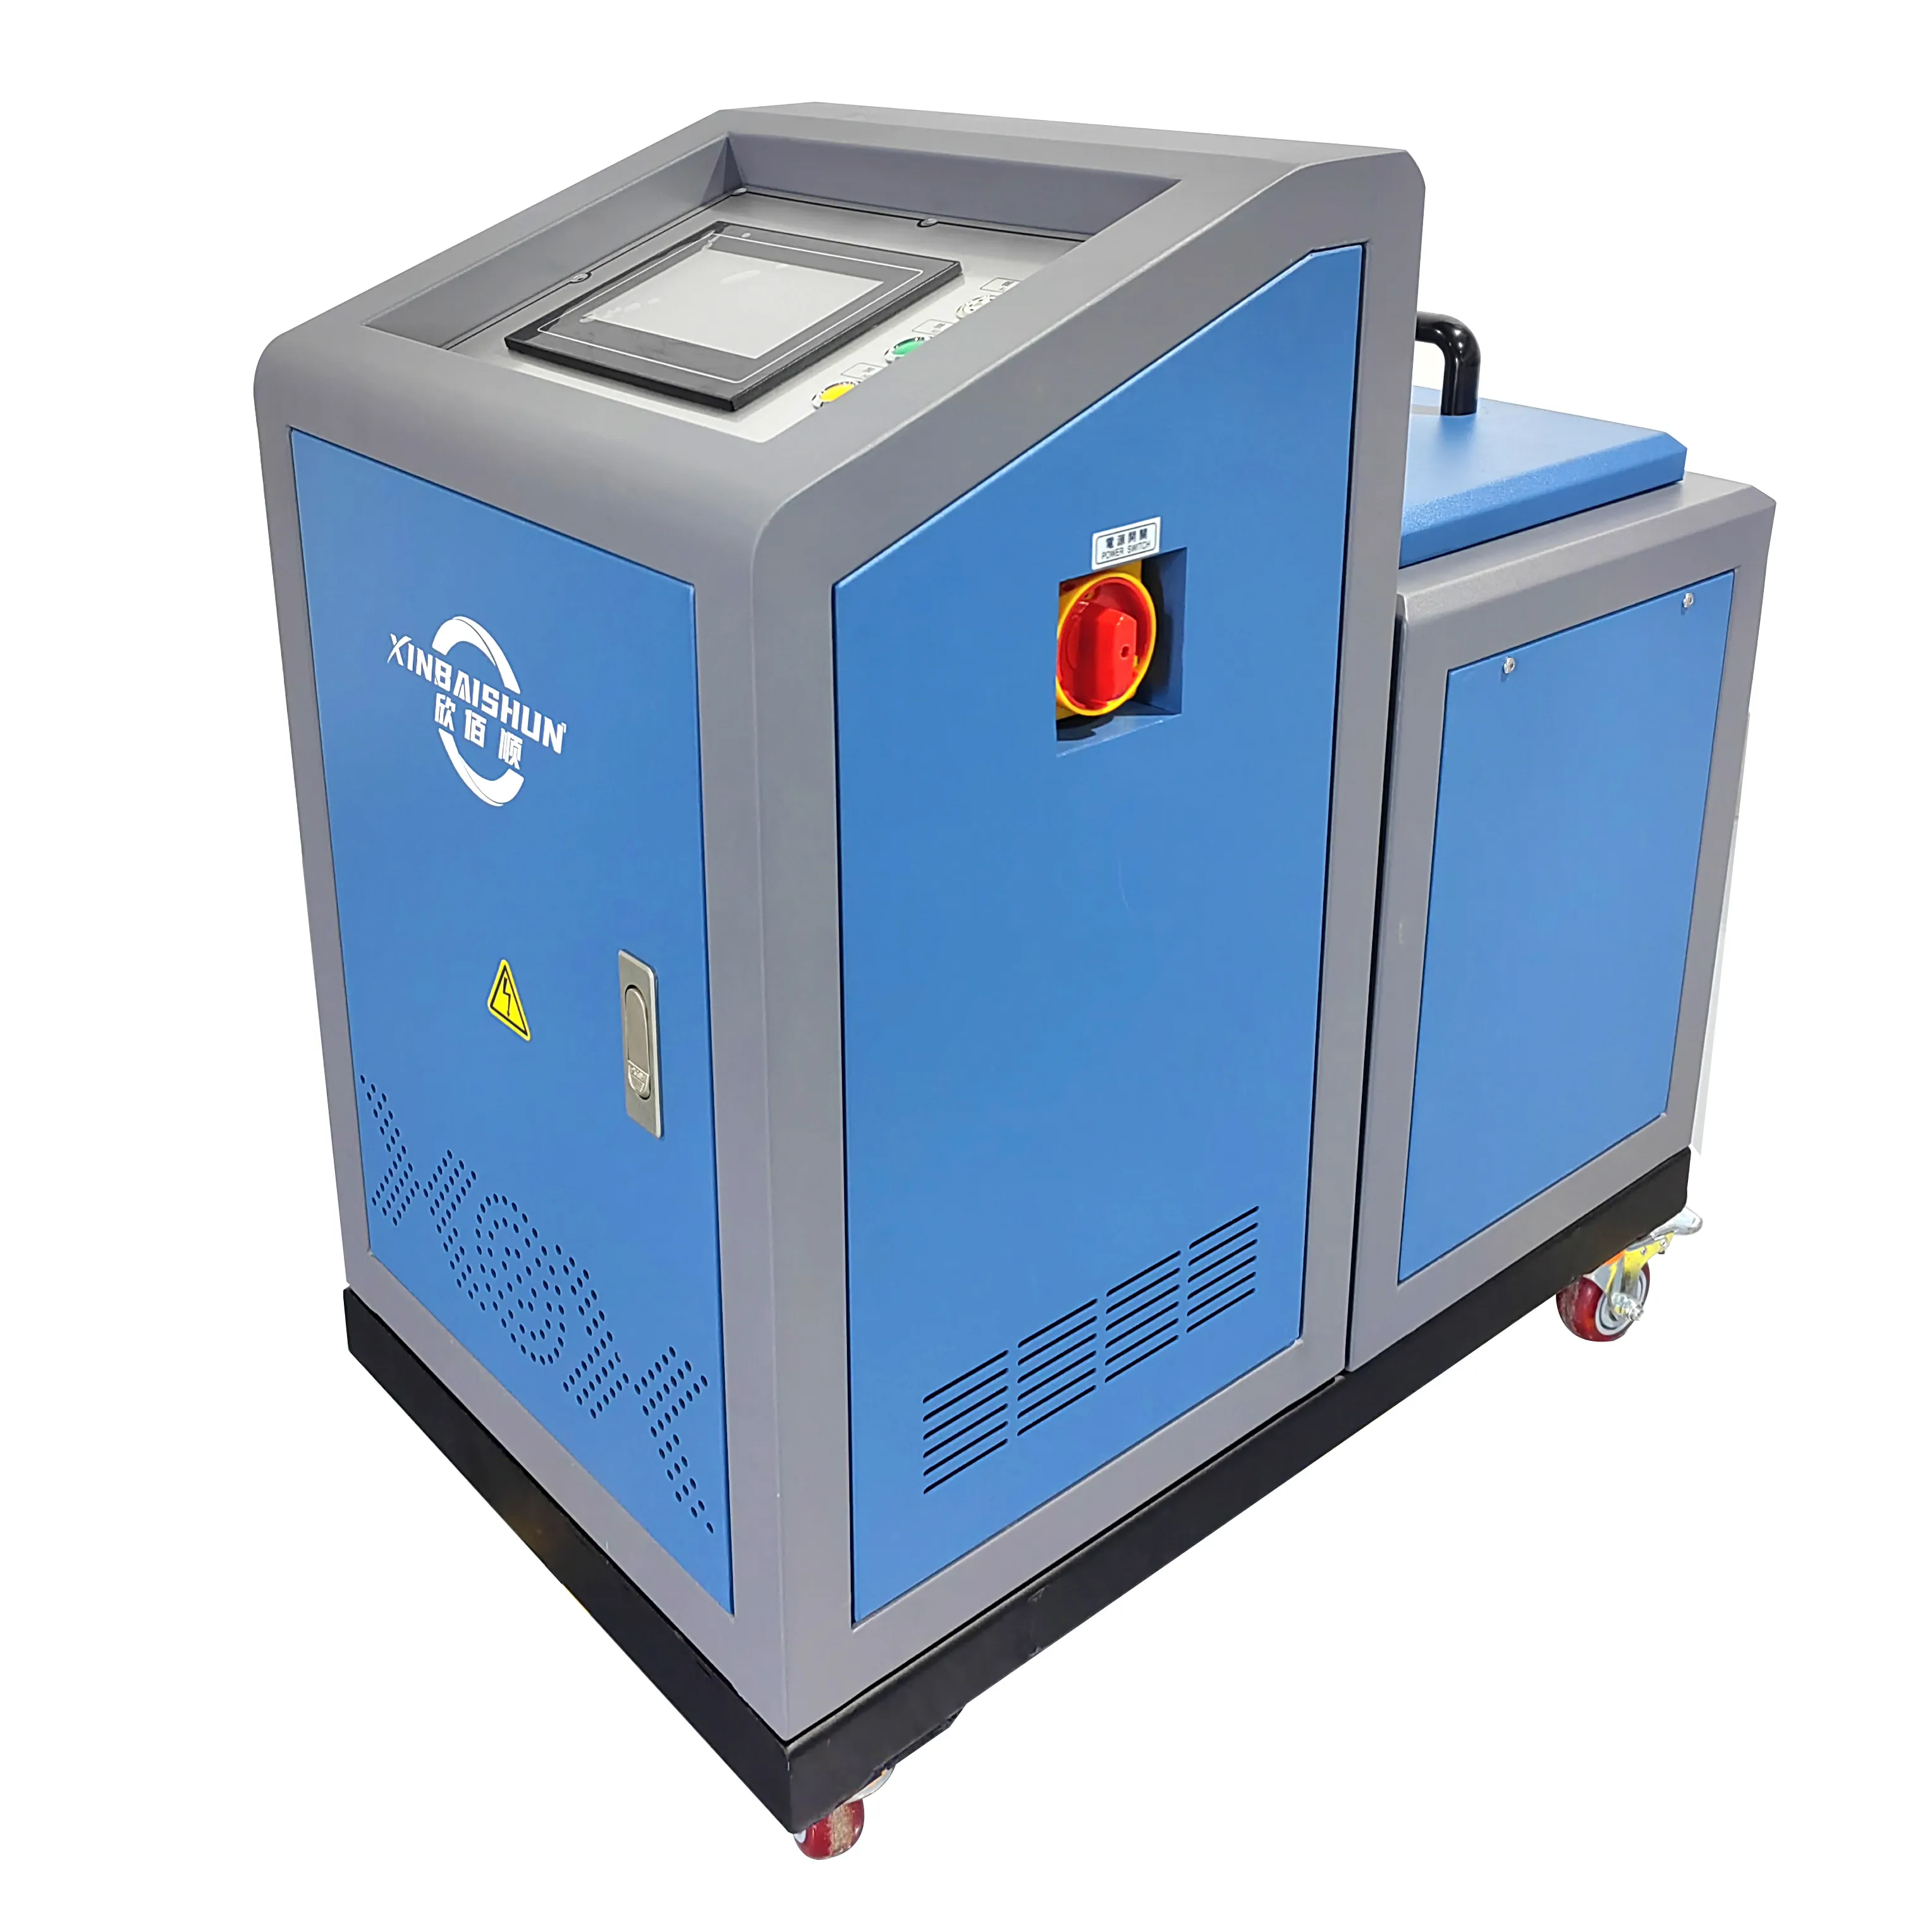 Automatischer Heiß schmelz klebe maschinen applikator mit einer Kapazität von 30 Litern für die Beschichtung produktion